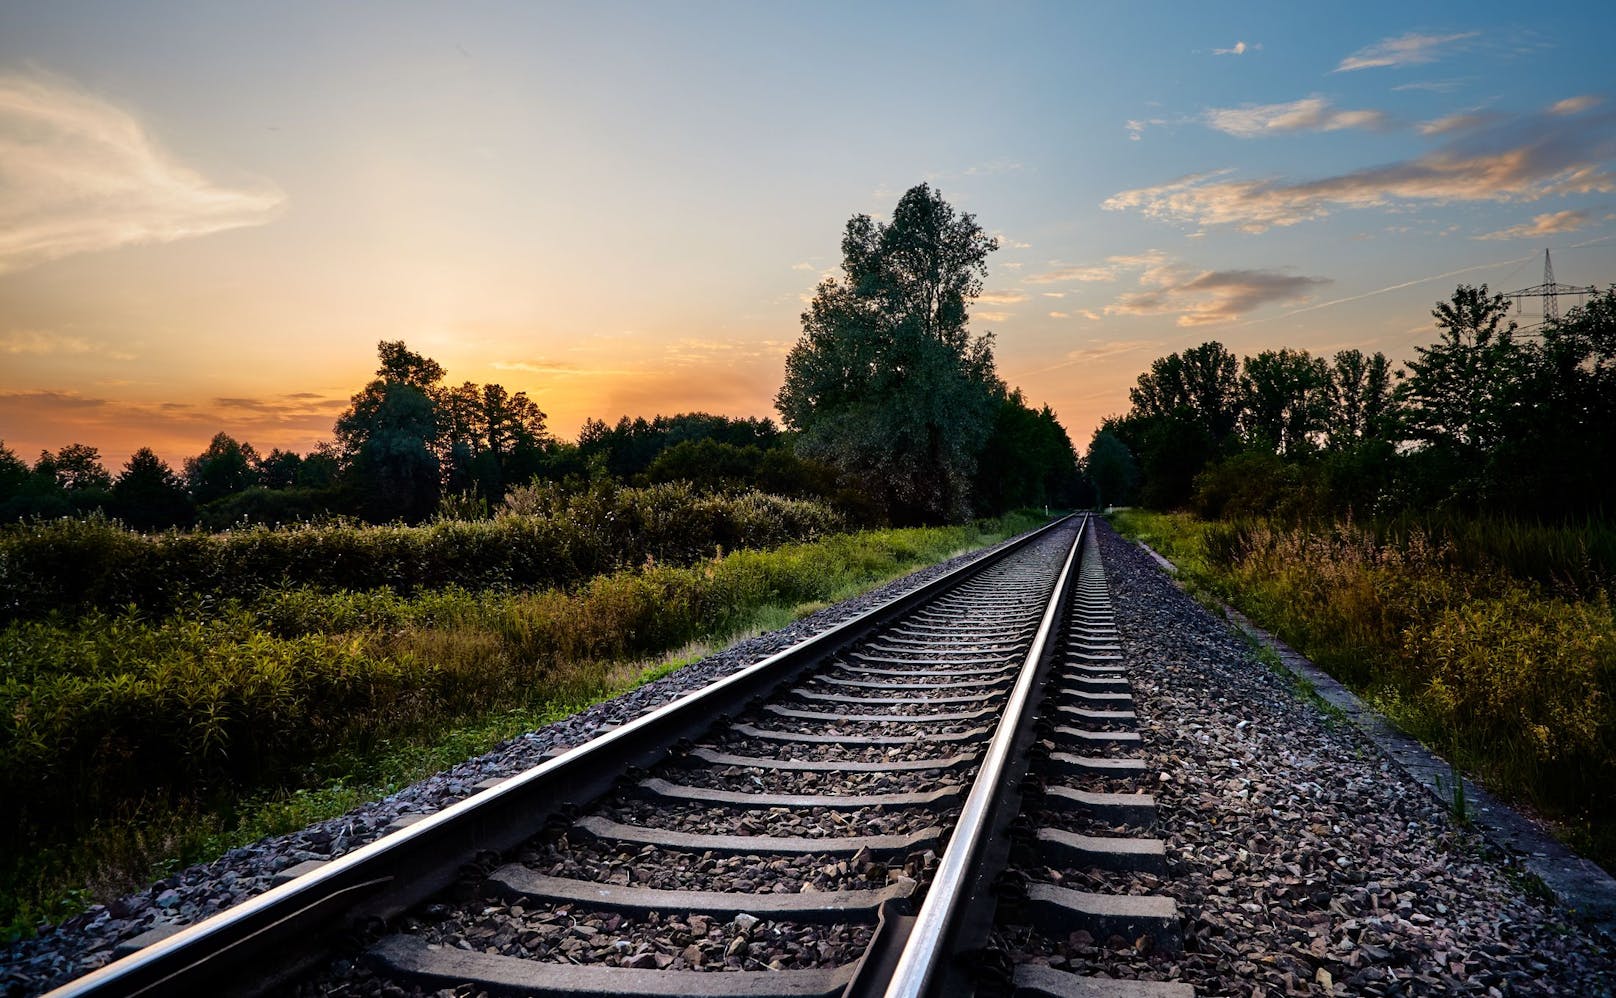 27-Jähriger hält Schläfchen im Gleis – dann kommt Zug